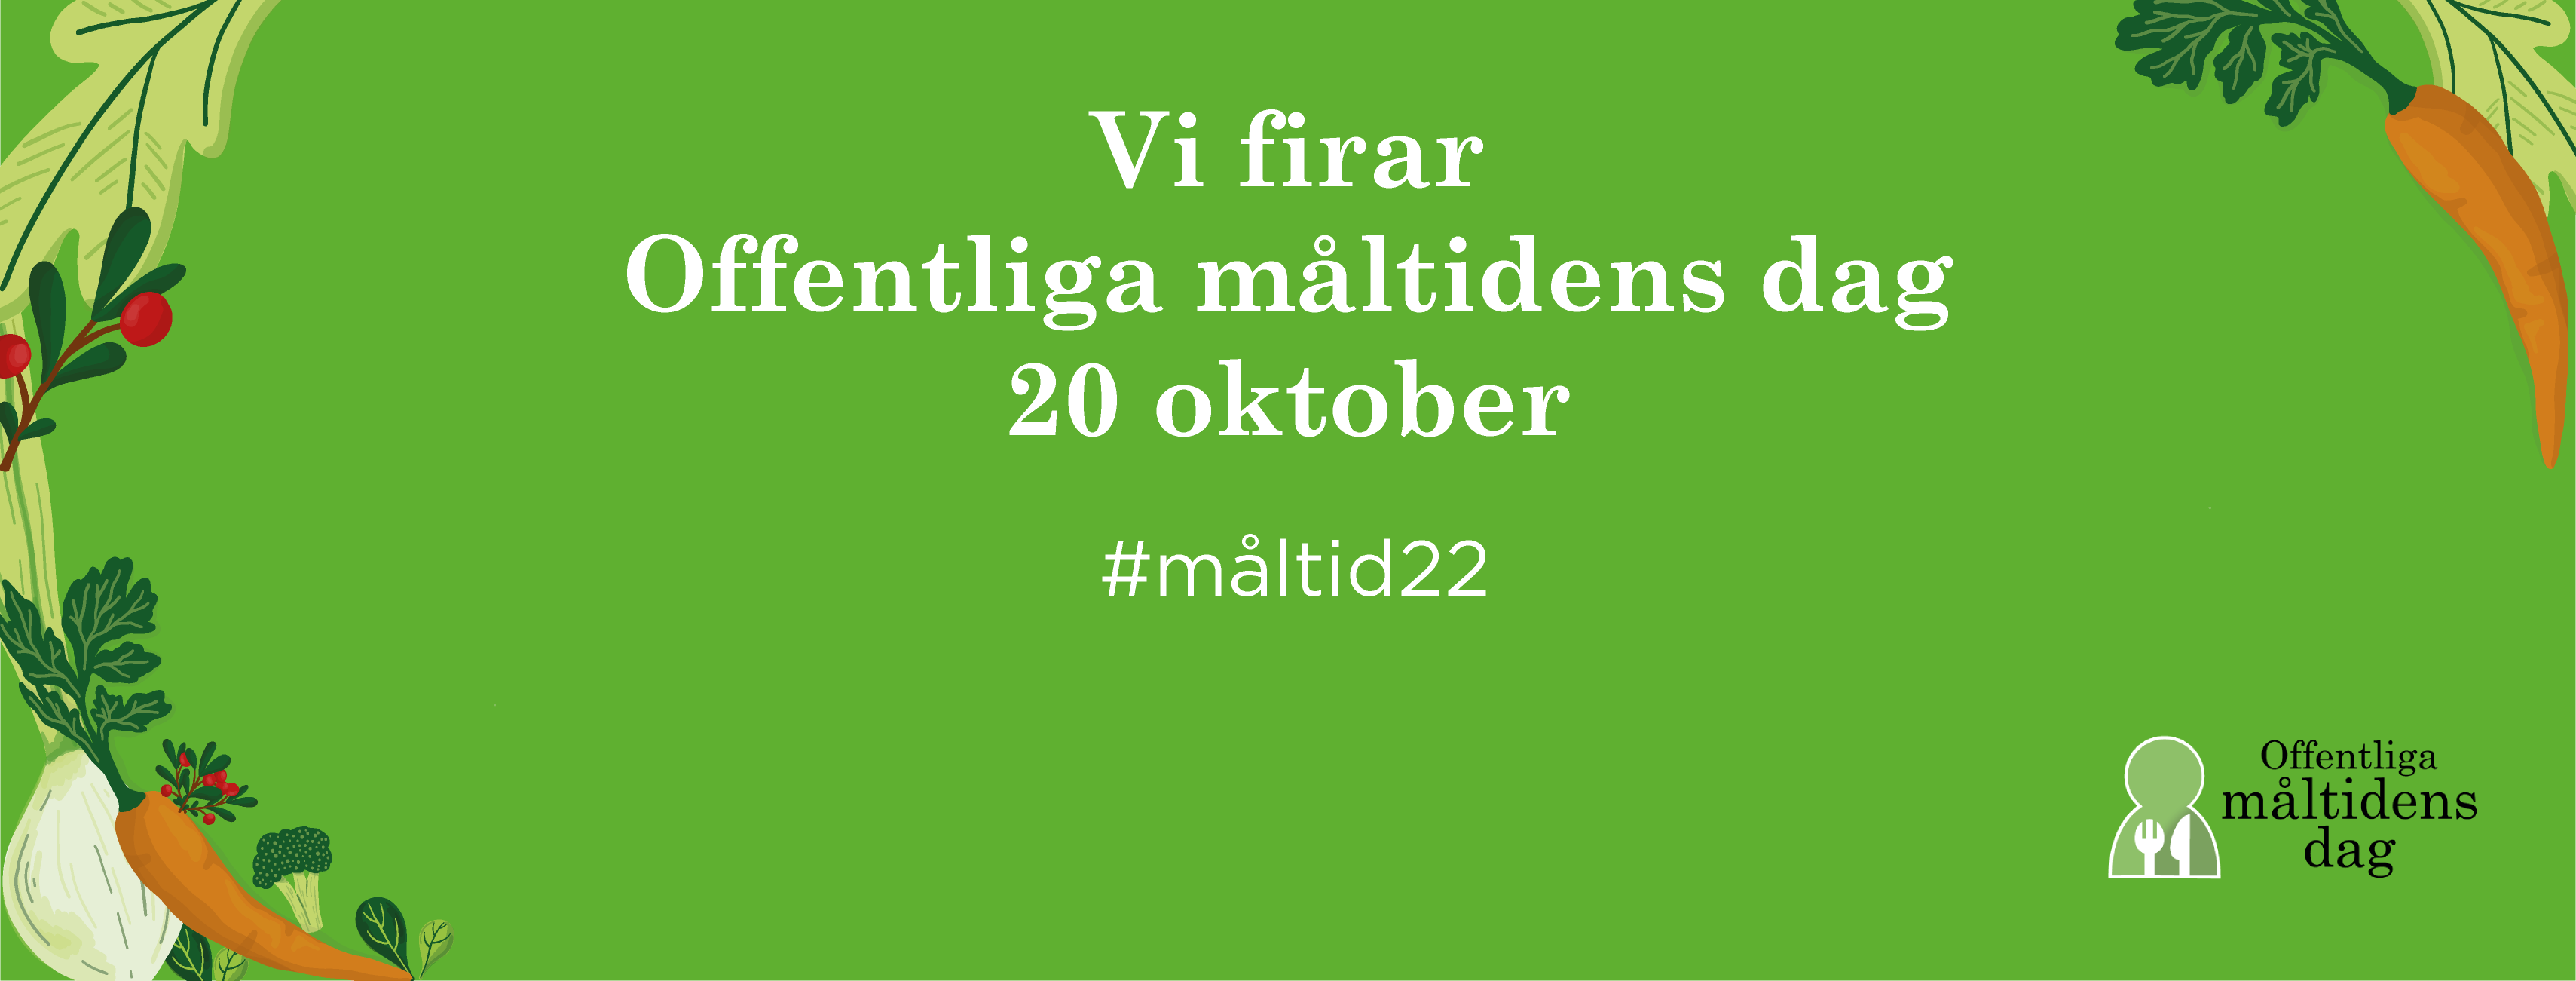 Grön bakgrund och vit text. "Vi firar måltidens dag, 20 oktober".